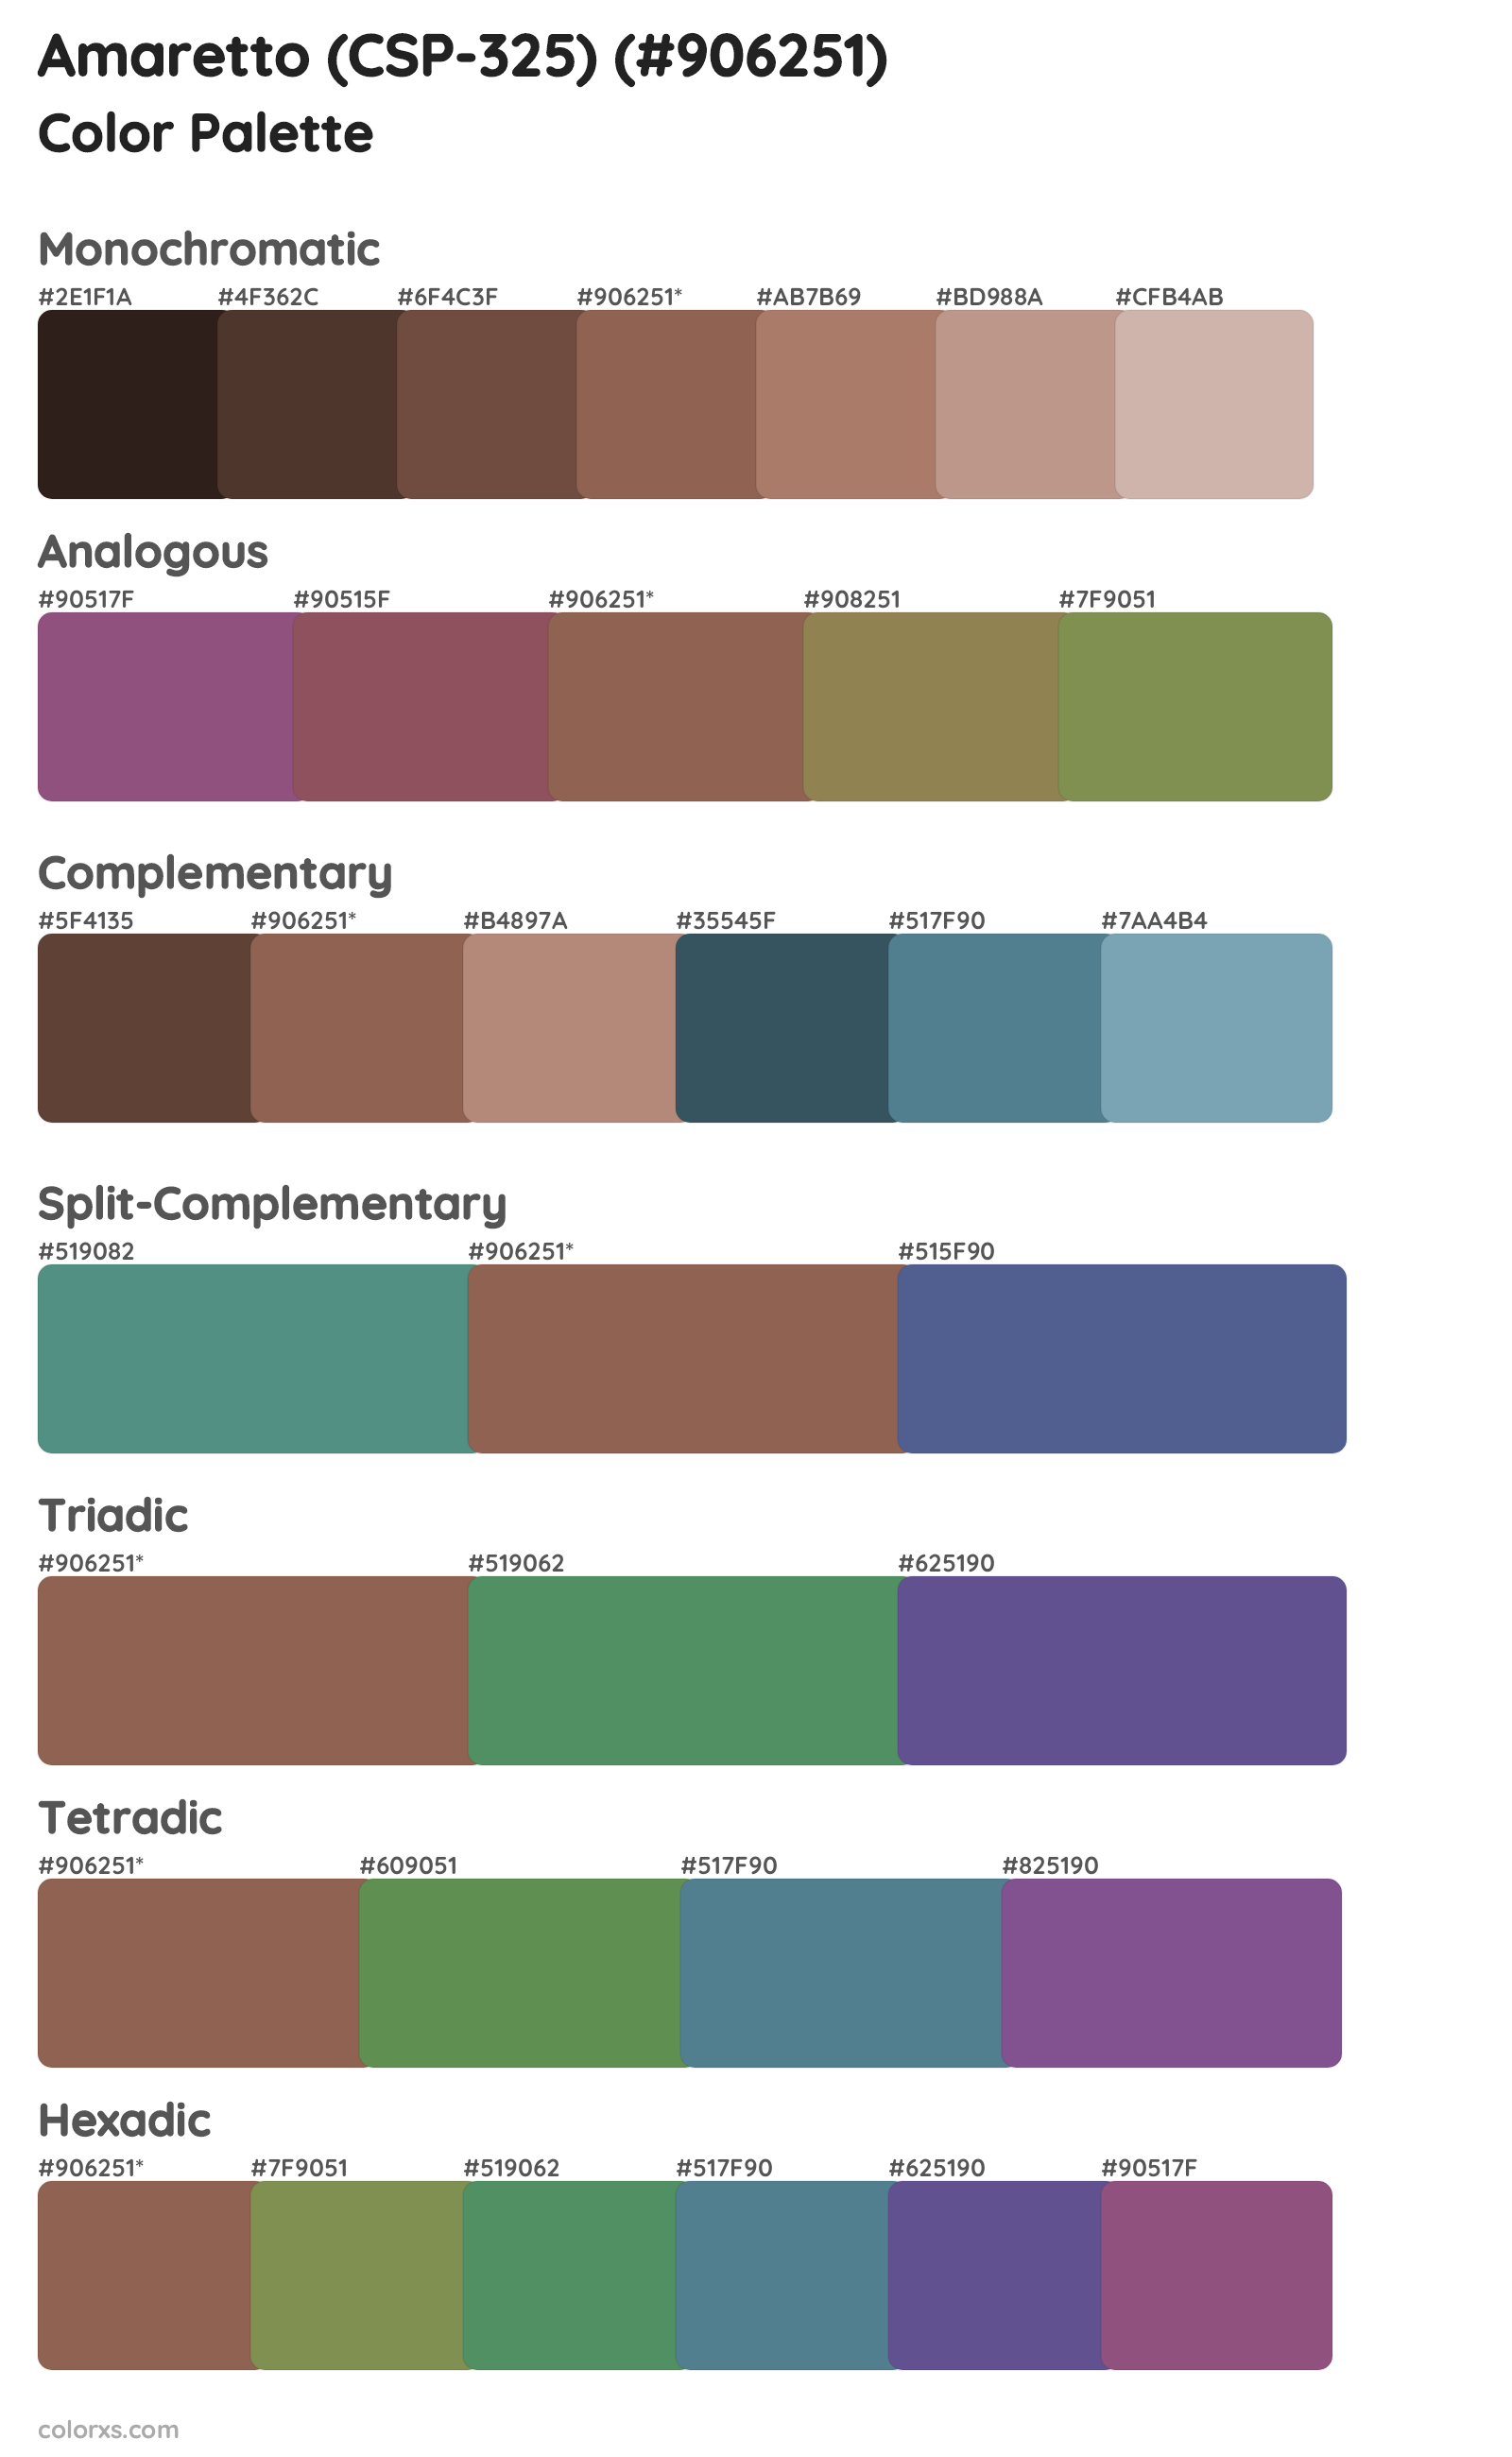 Amaretto (CSP-325) Color Scheme Palettes